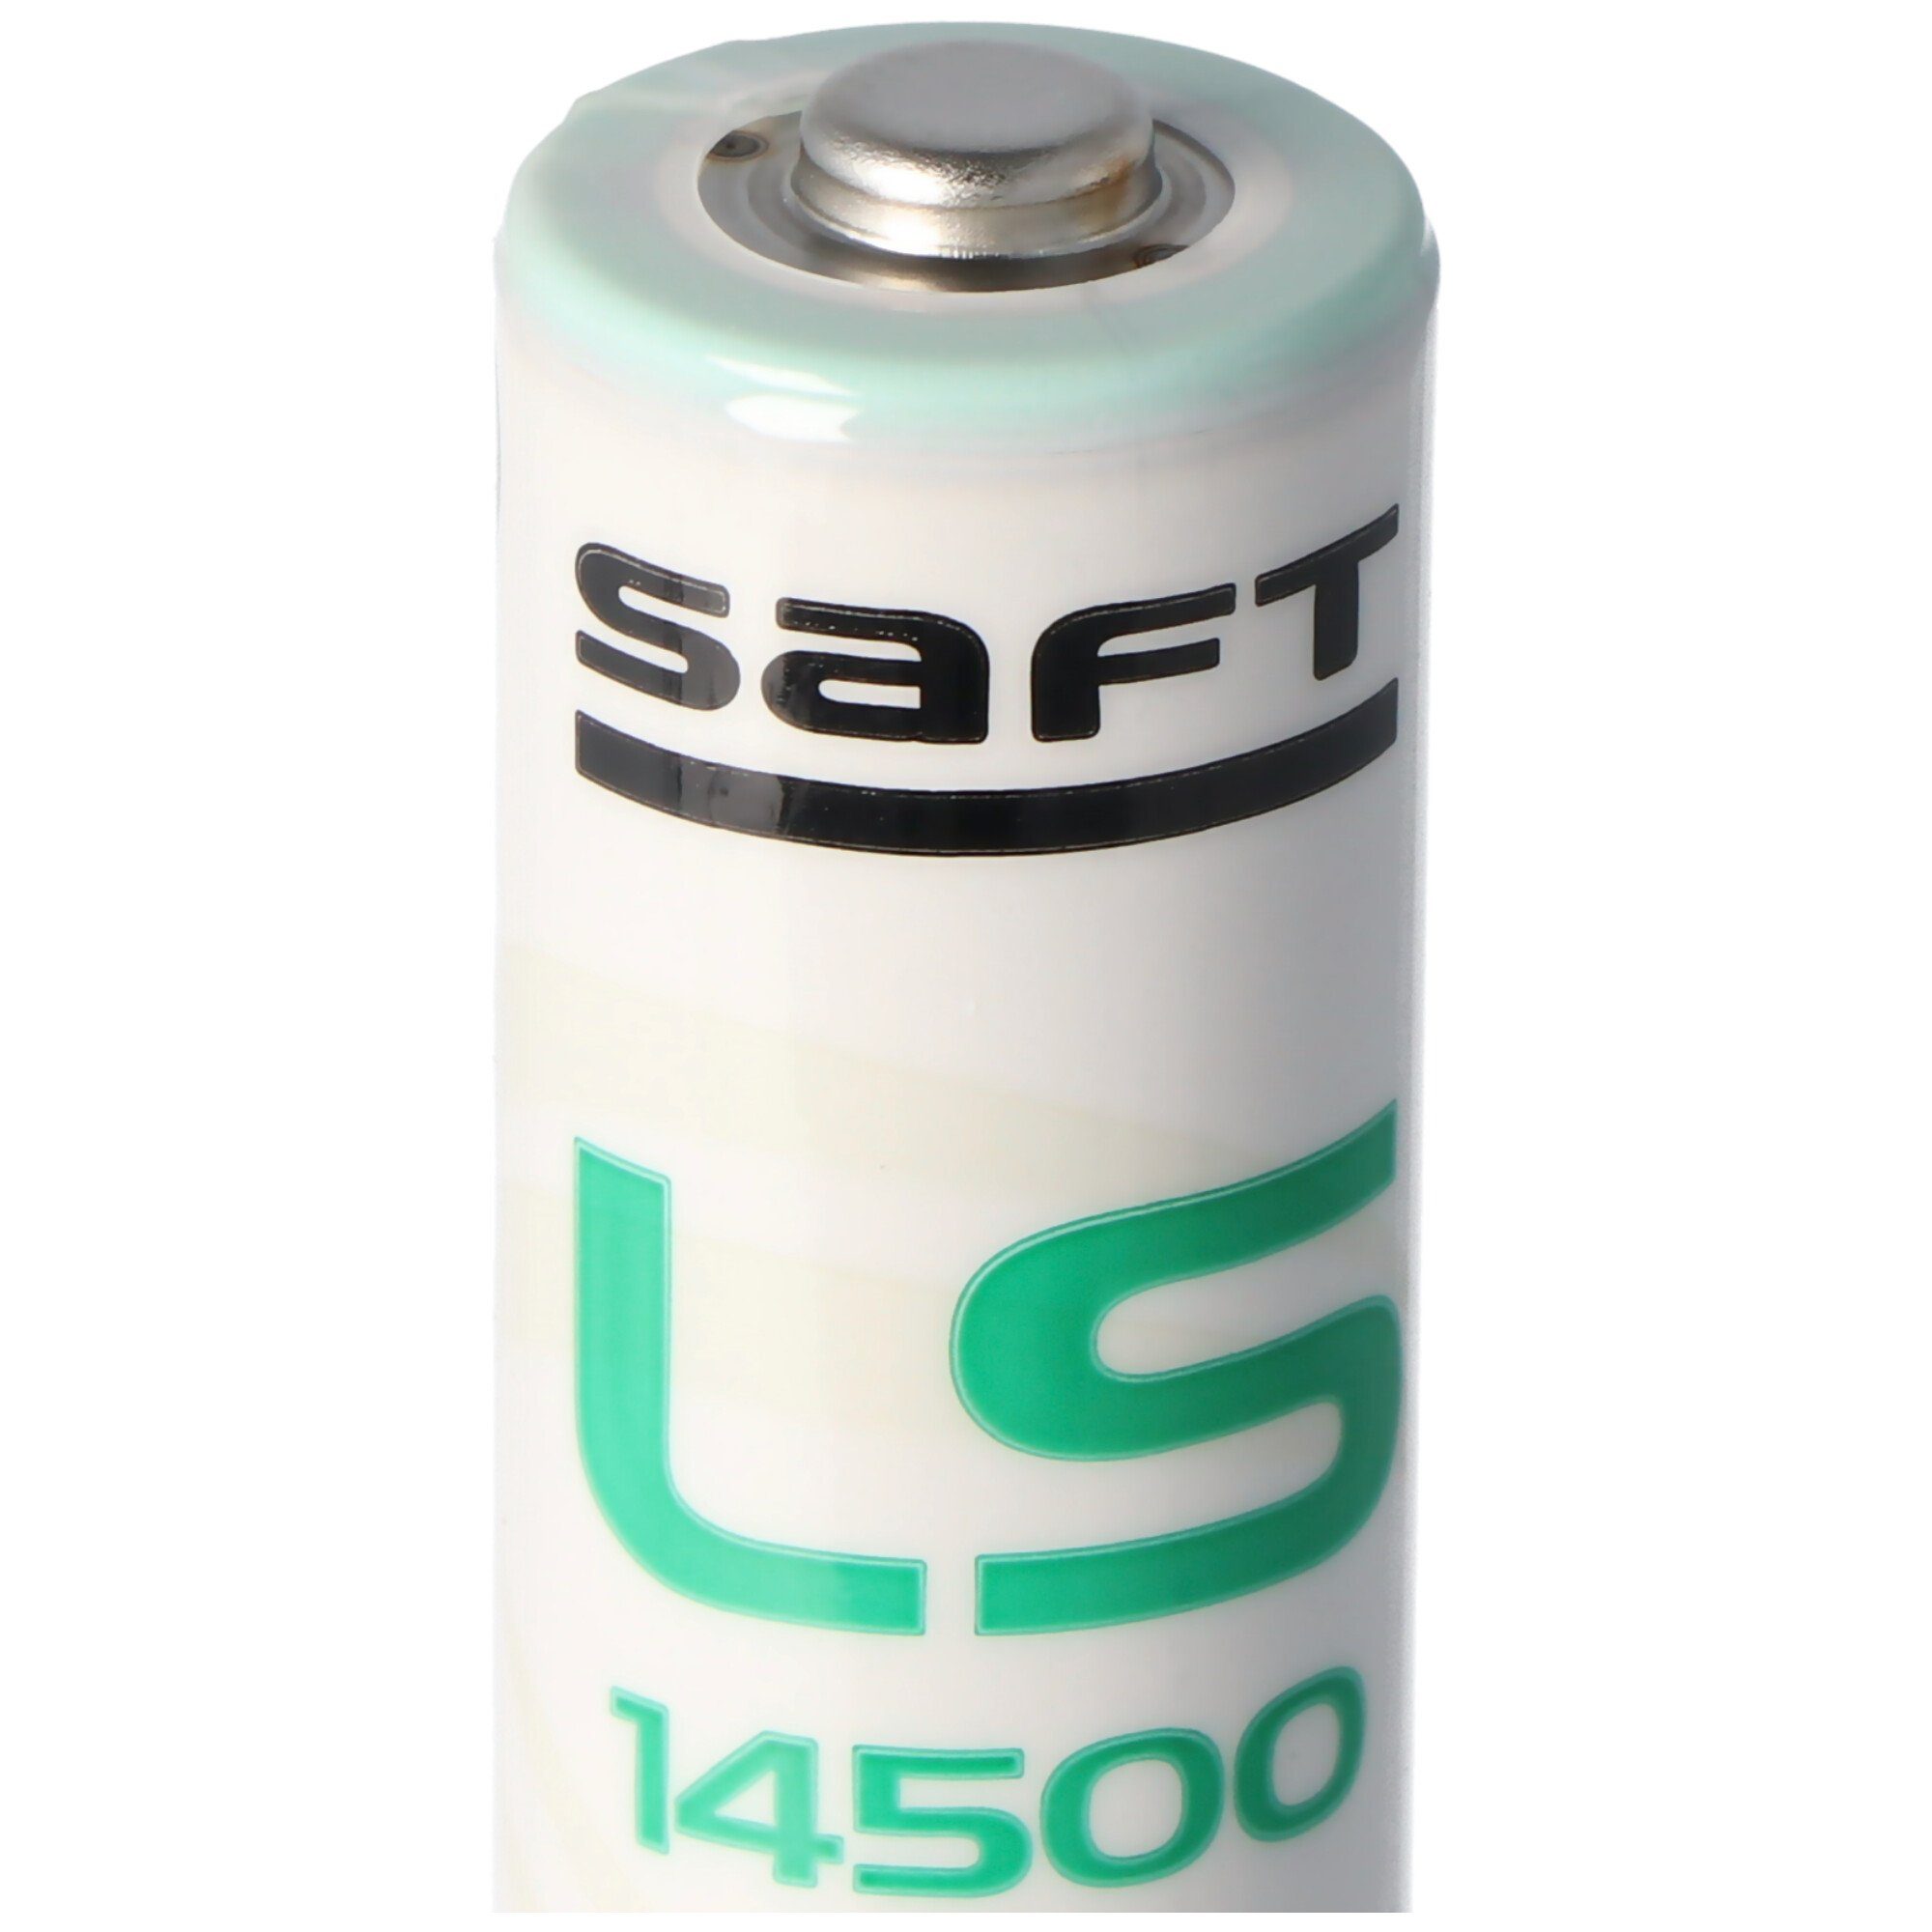 FU2992 Batterie Secvest für passend Ersatzbatterie für Abus Stück Funk-Beweg 4 Saft